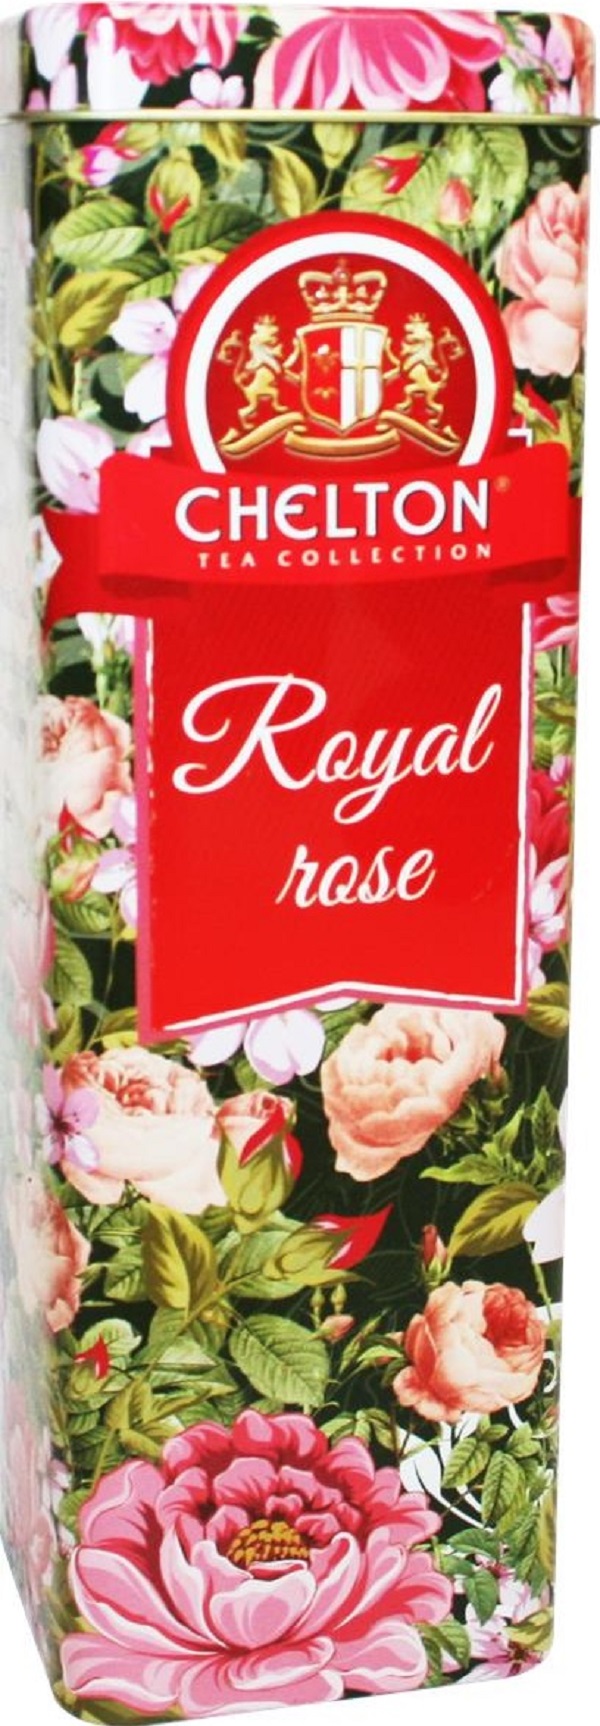 Ceai negru in cutie metalica: Royal Rose